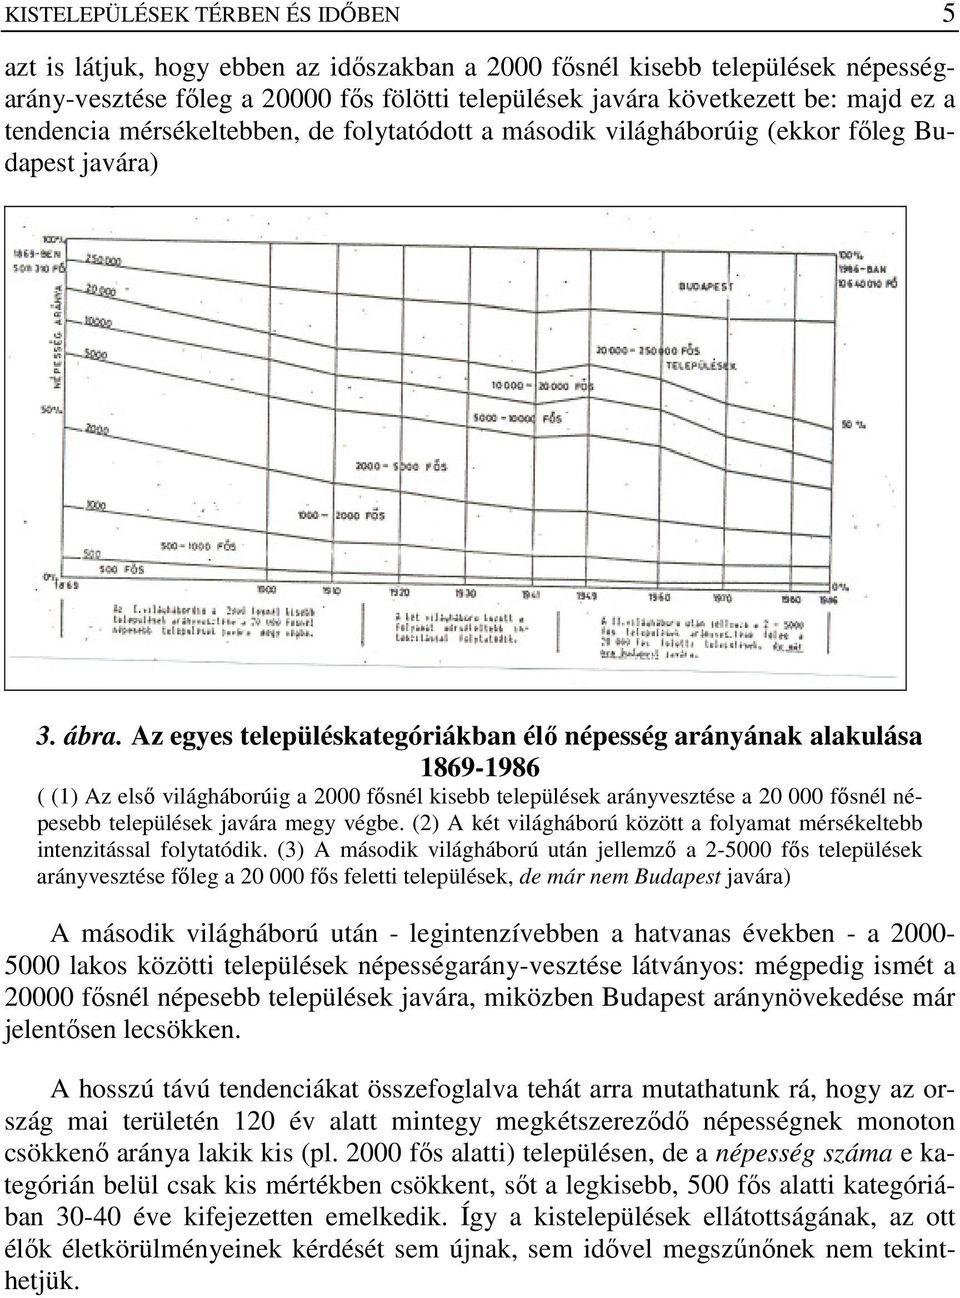 Az egyes településkategóriákban élı népesség arányának alakulása 1869-1986 ( (1) Az elsı világháborúig a 2000 fısnél kisebb települések arányvesztése a 20 000 fısnél népesebb települések javára megy